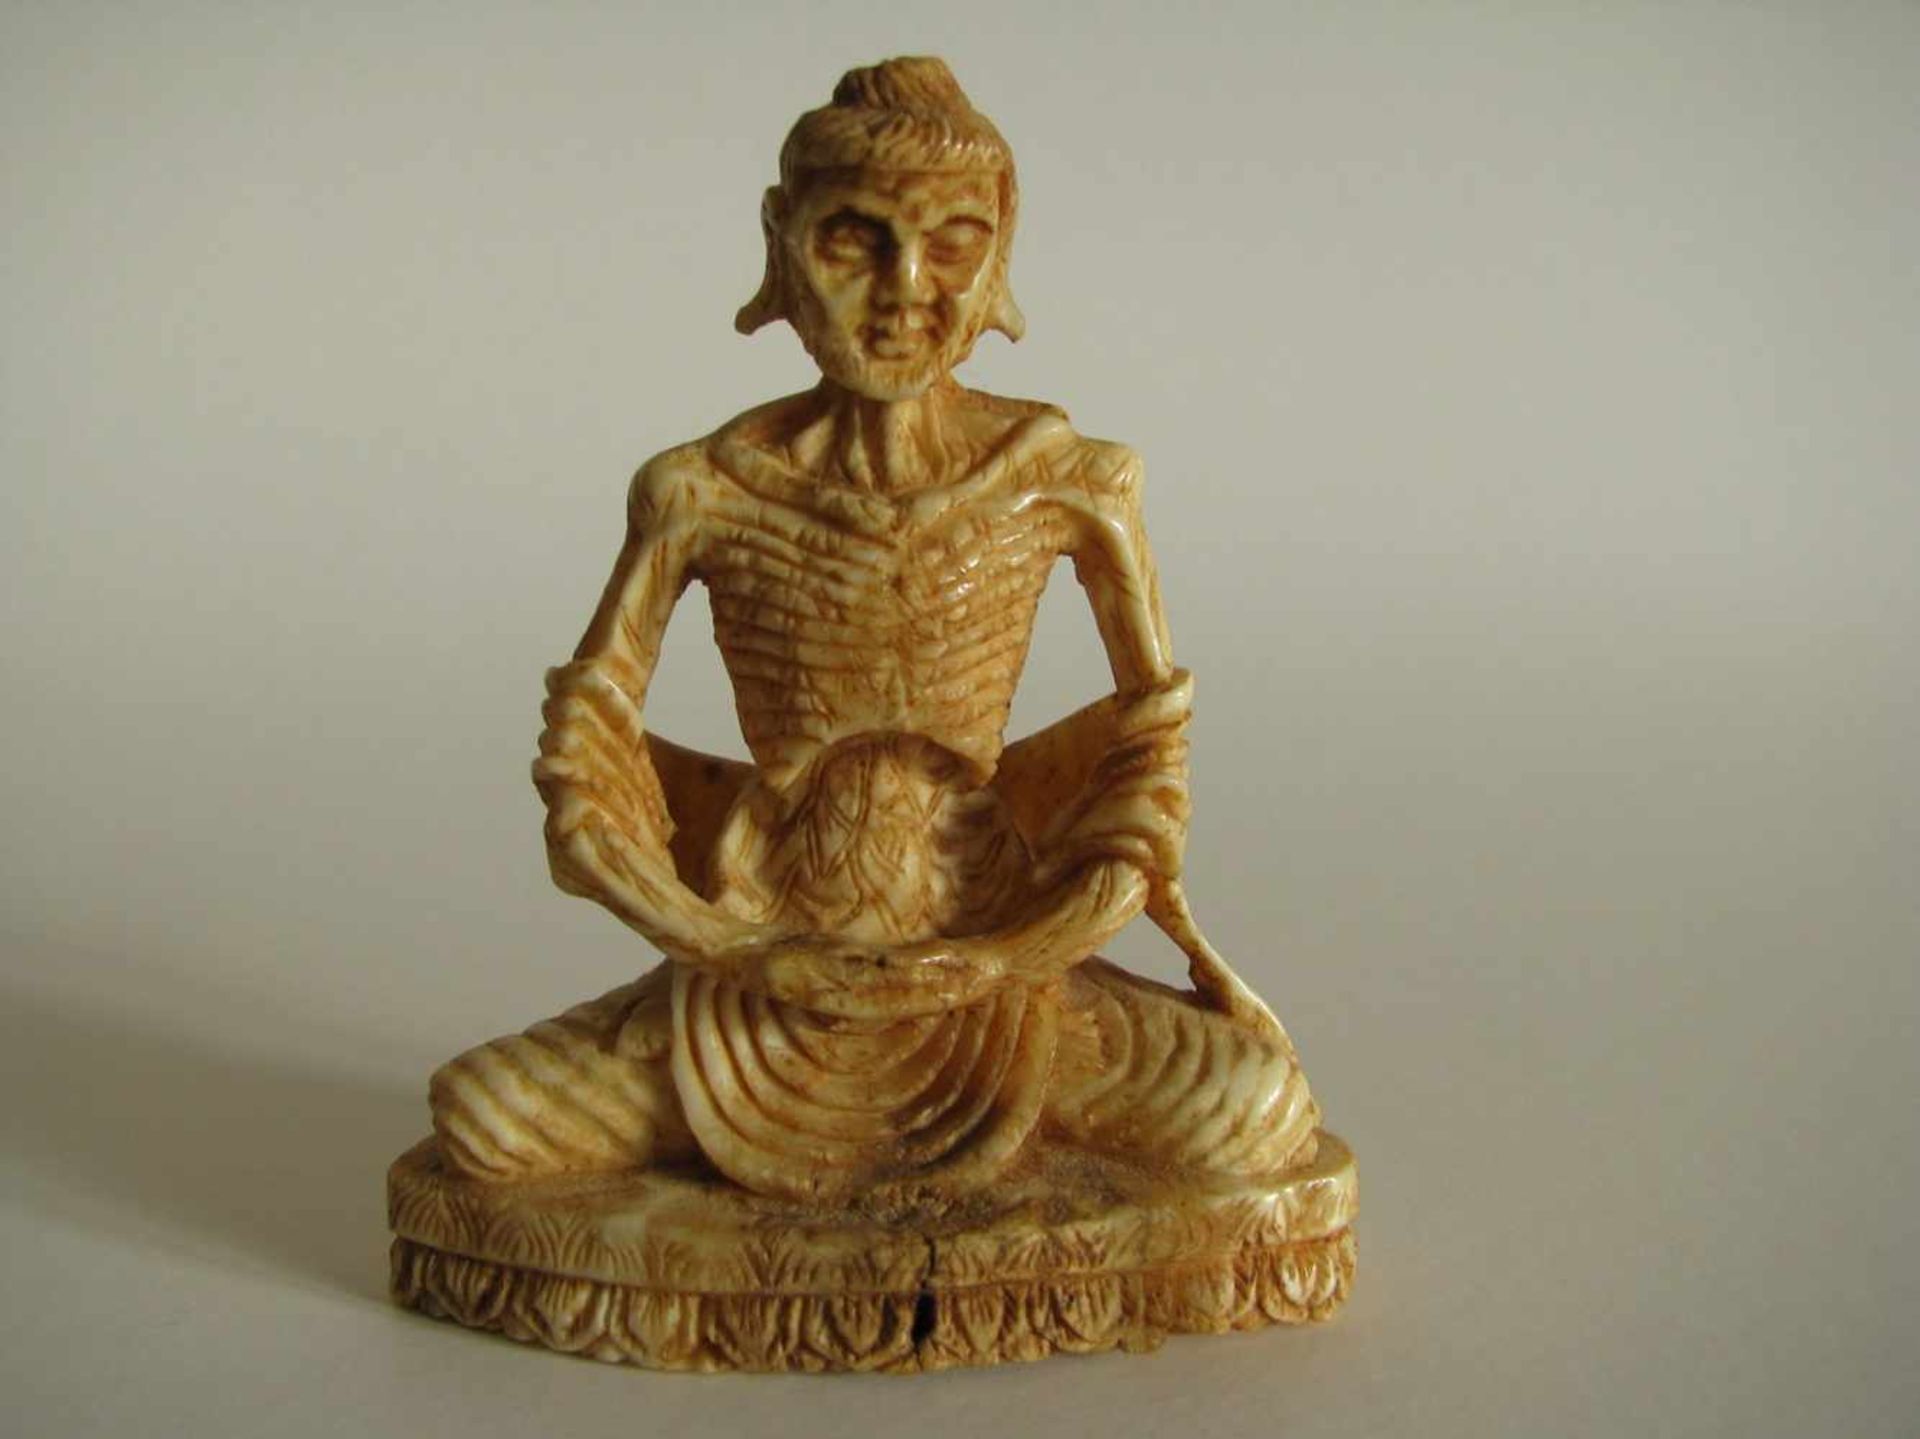 Skelettierter Buddha, wohl Südostasien, 19. Jahrhundert, Elfenbein beschnitzt, 7 x 6 x 3 cm.